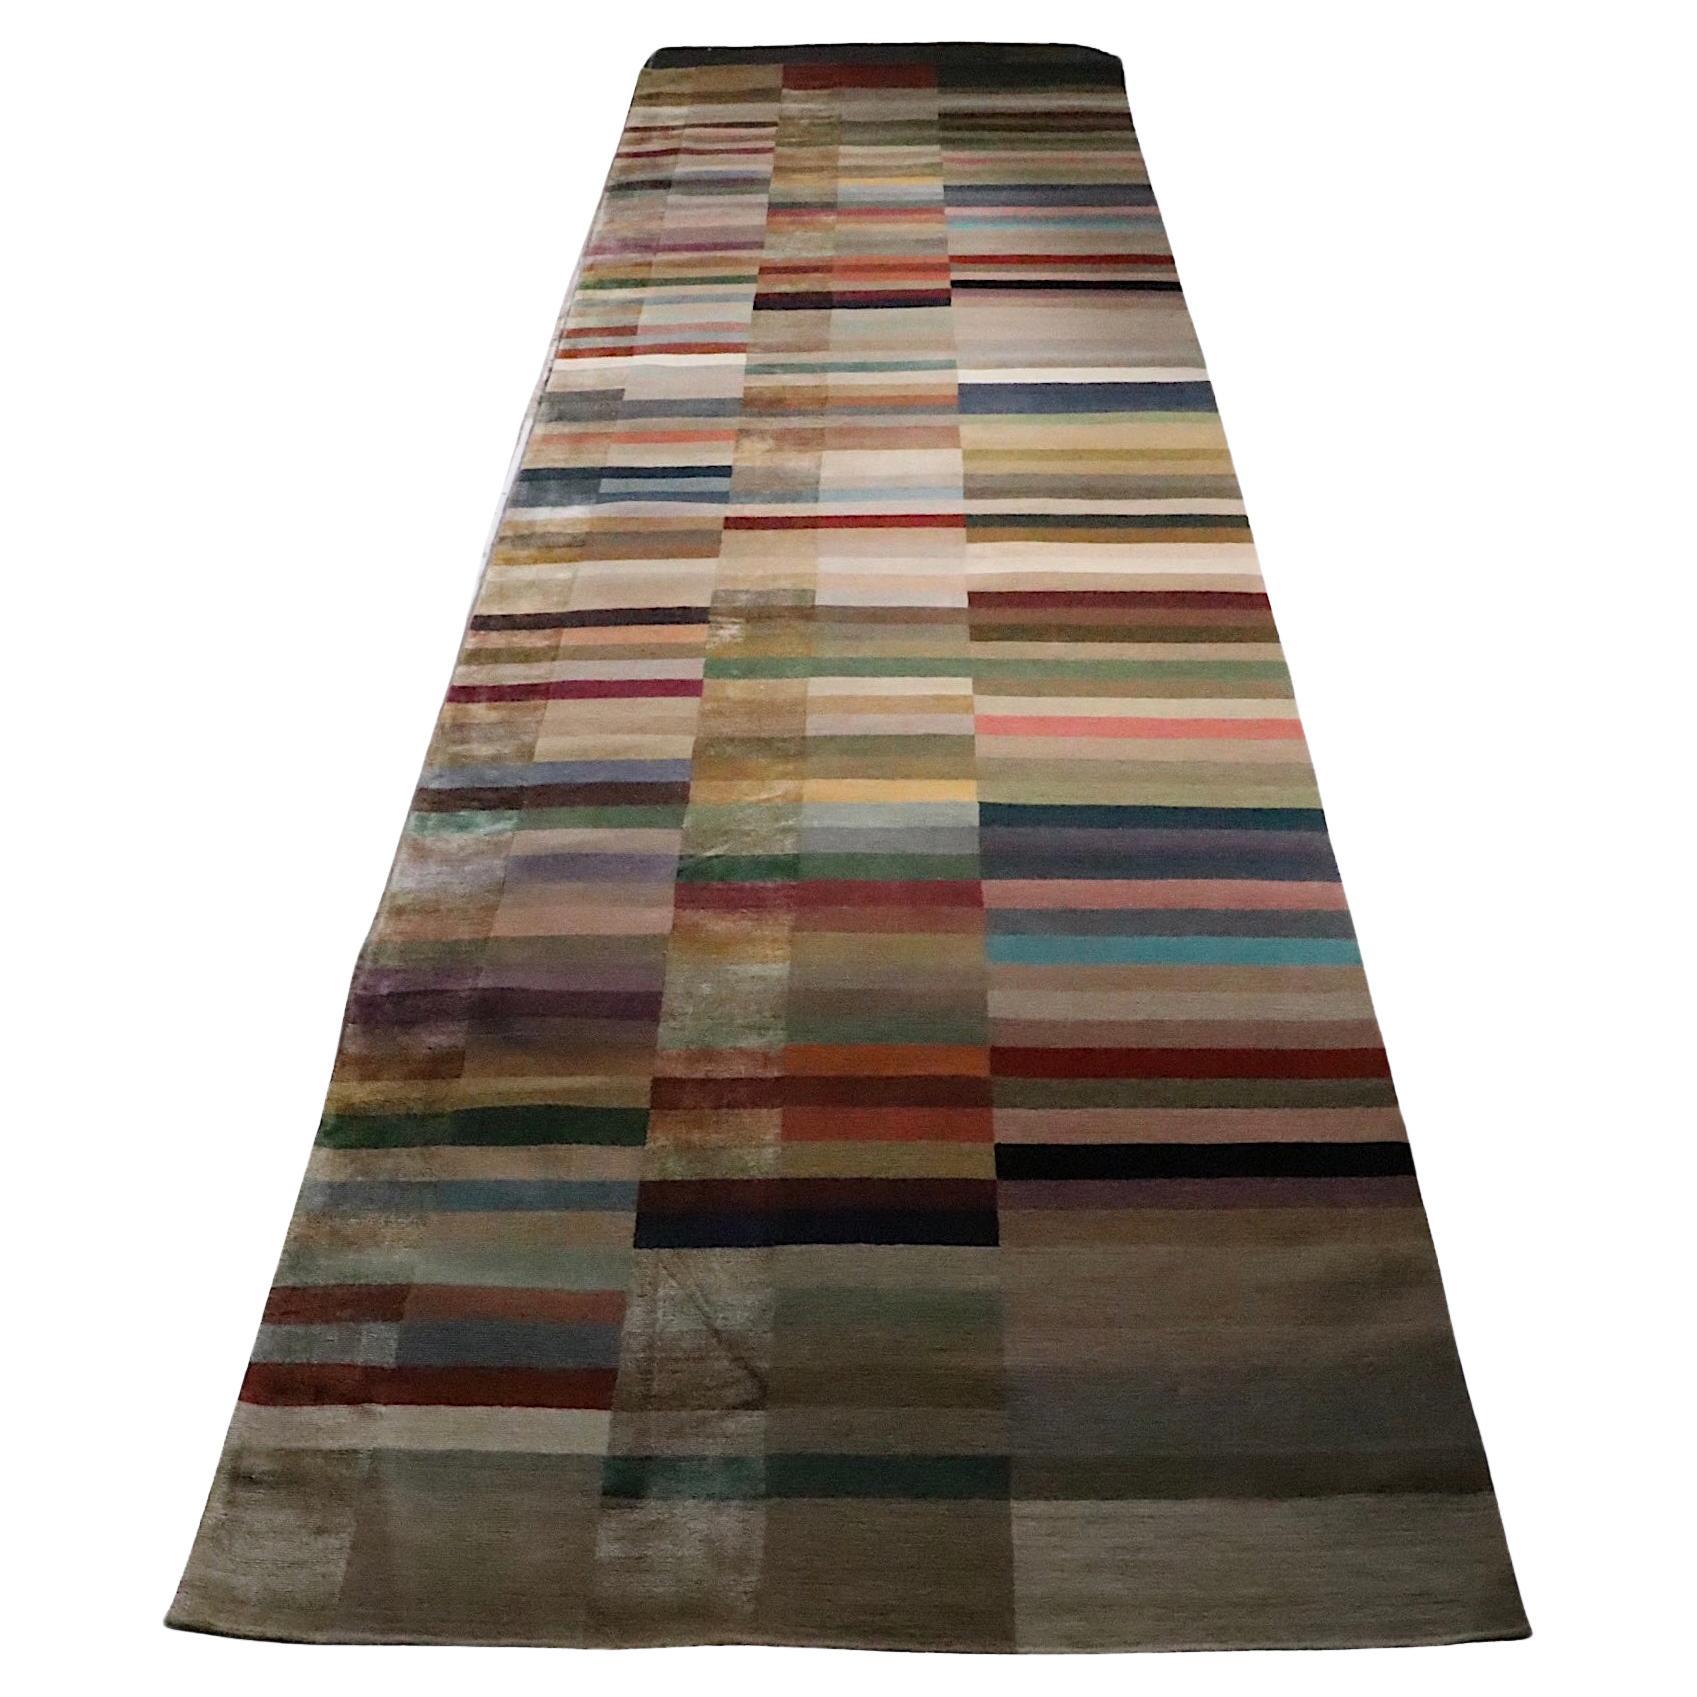 Unglaublicher Läufer mit Spectrum-Muster, hergestellt in Nepal für The Rug Company. Der Teppich besteht aus drei Reihen von  einfarbigen Blöcken, deren warme, satte Töne einen Hauch von Eleganz ausstrahlen. Auch die Handwerkskunst und die Qualität